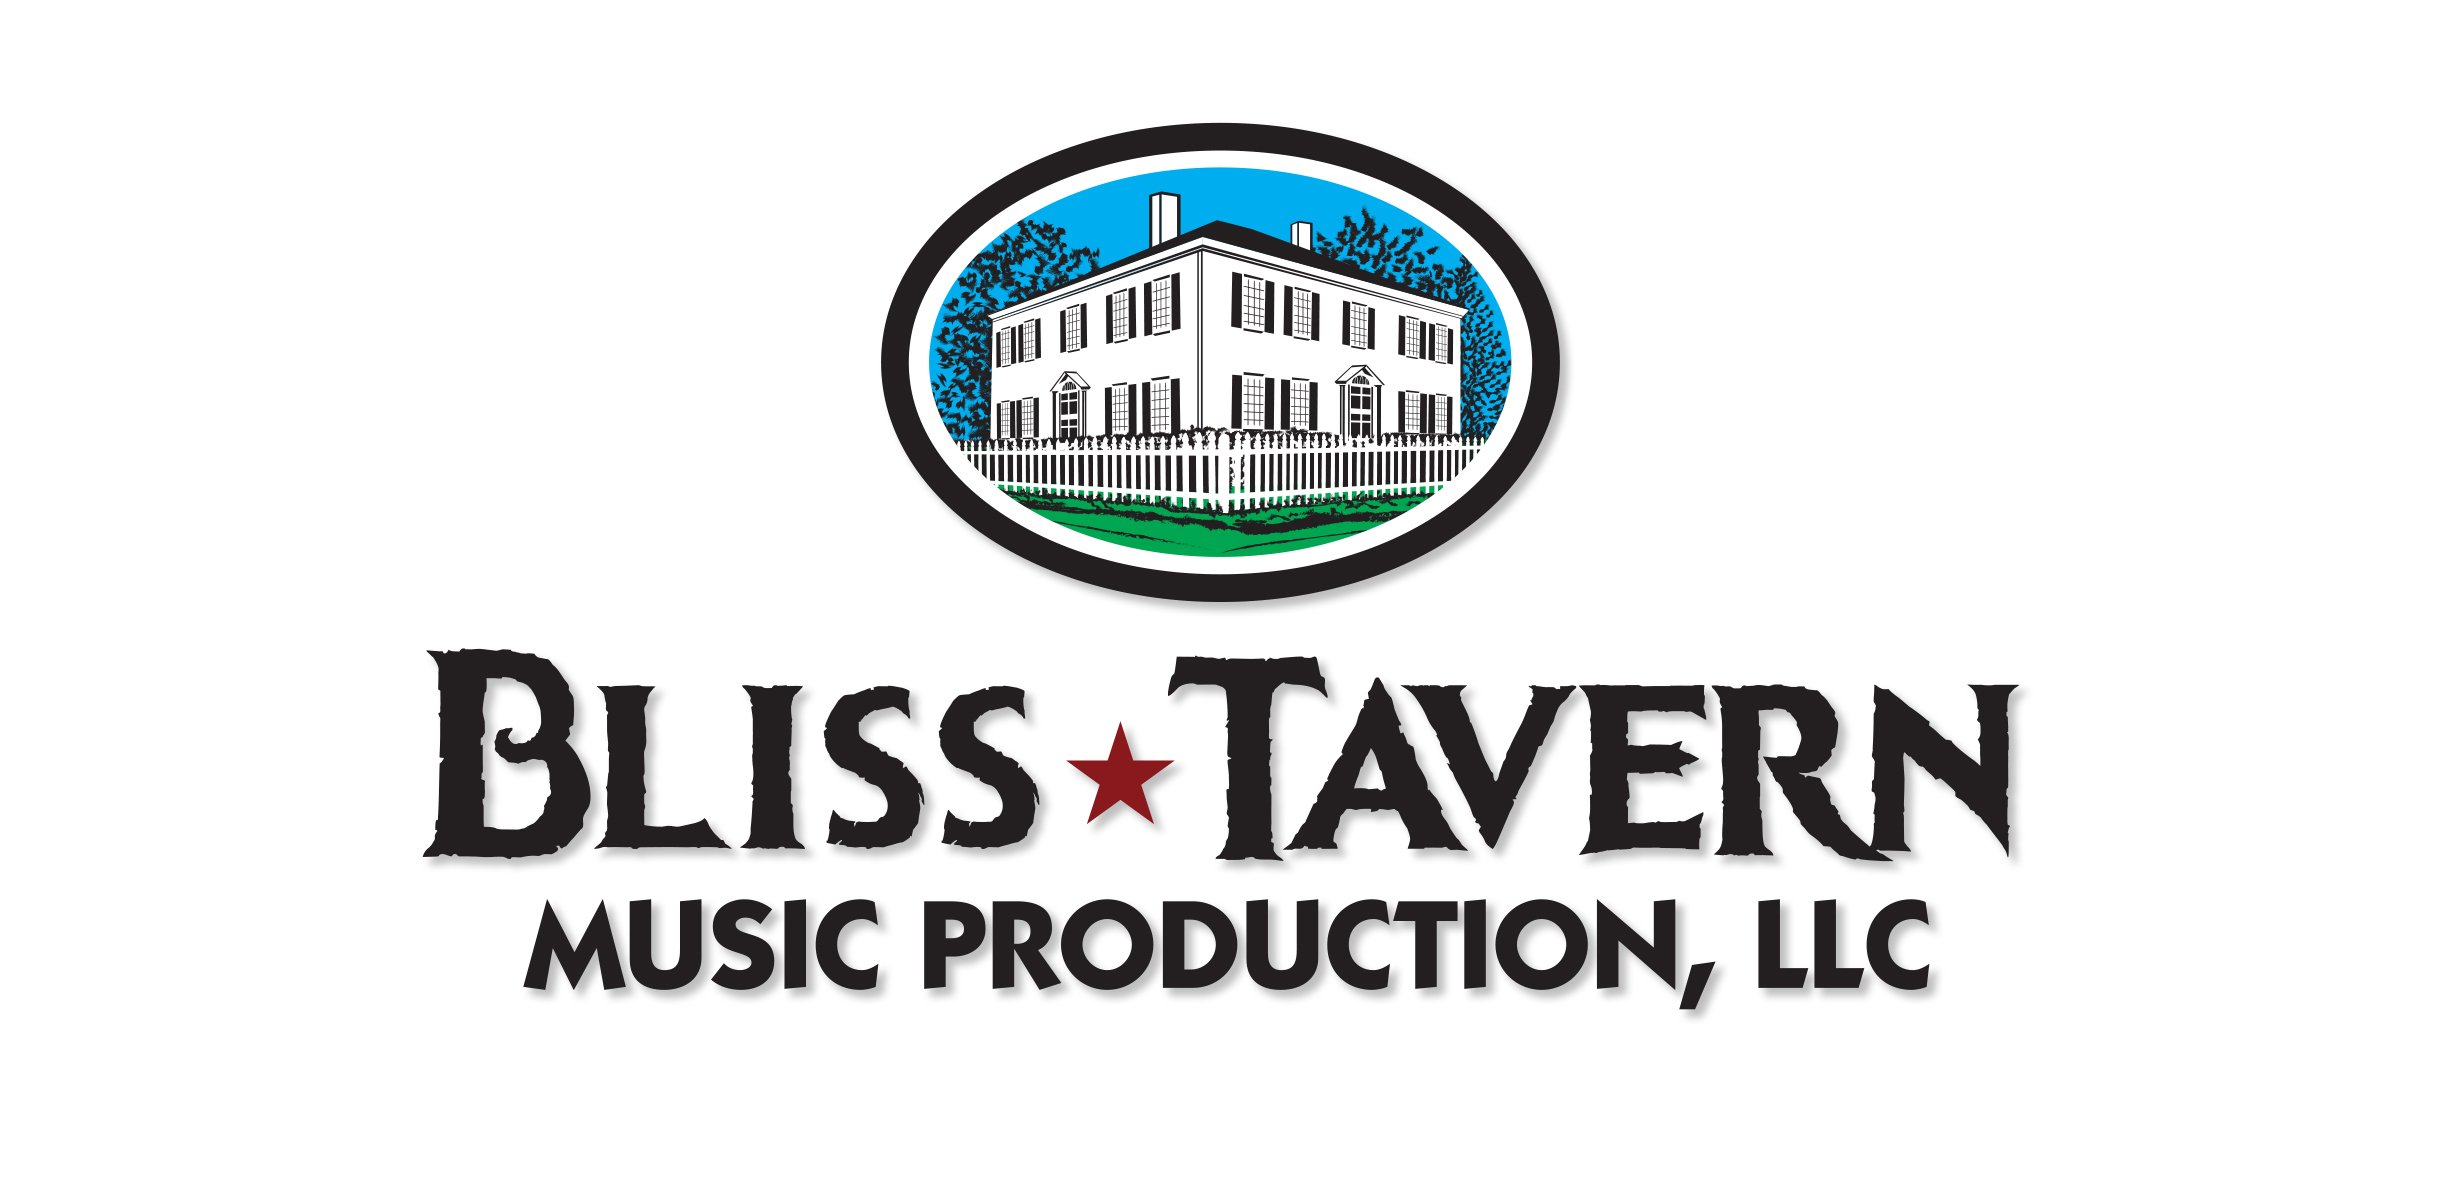 Live Event Music Marketing Logo Design – design by SP STUDIOS.